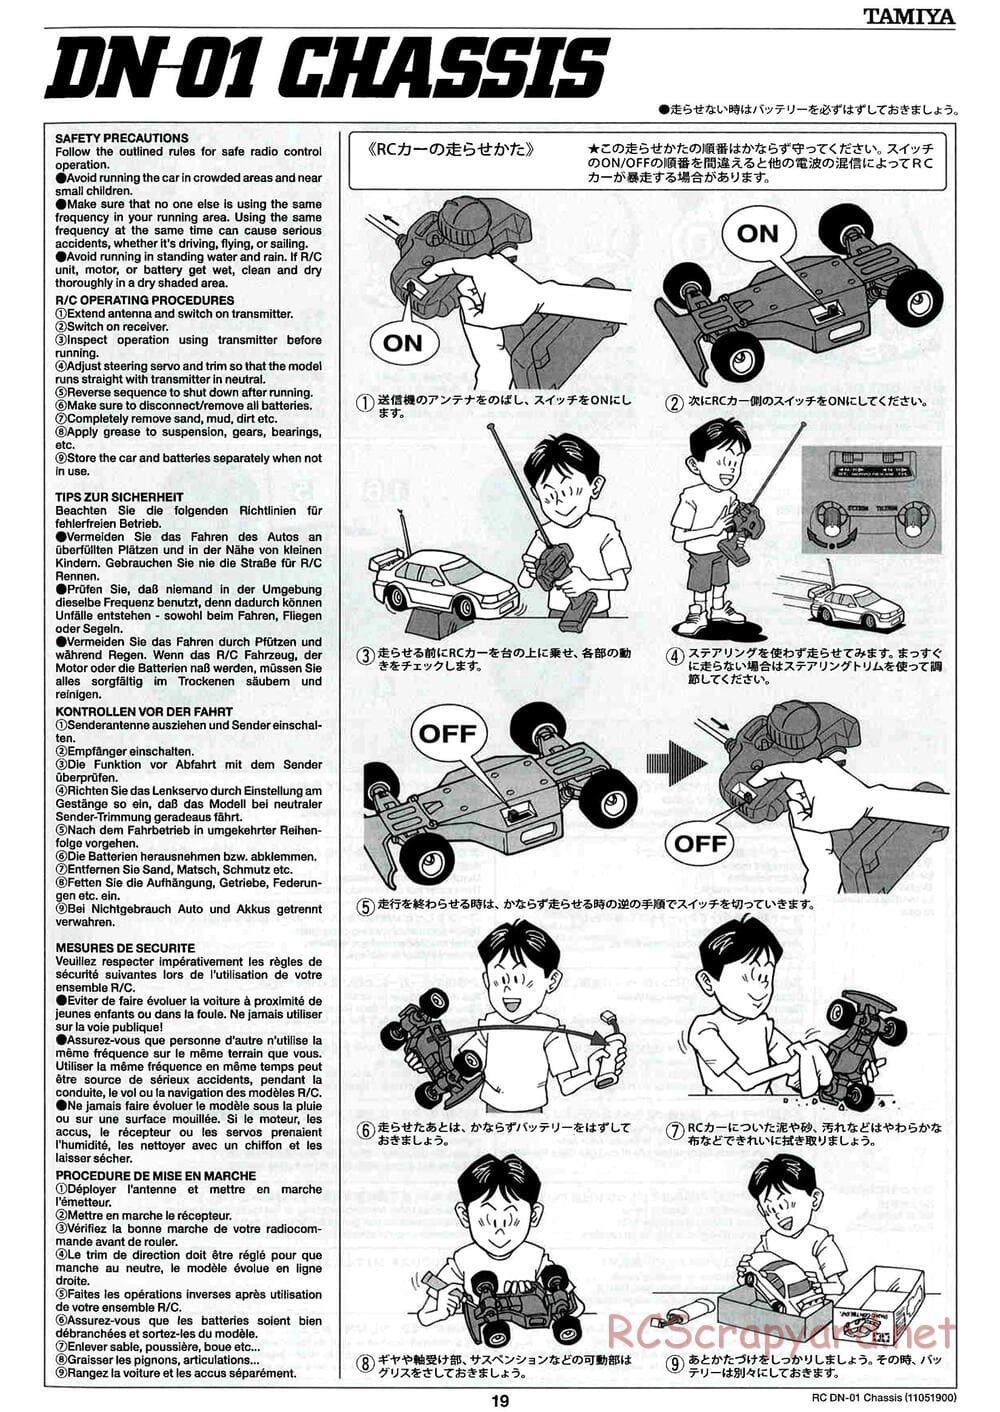 Tamiya - DN-01 Chassis - Manual - Page 19